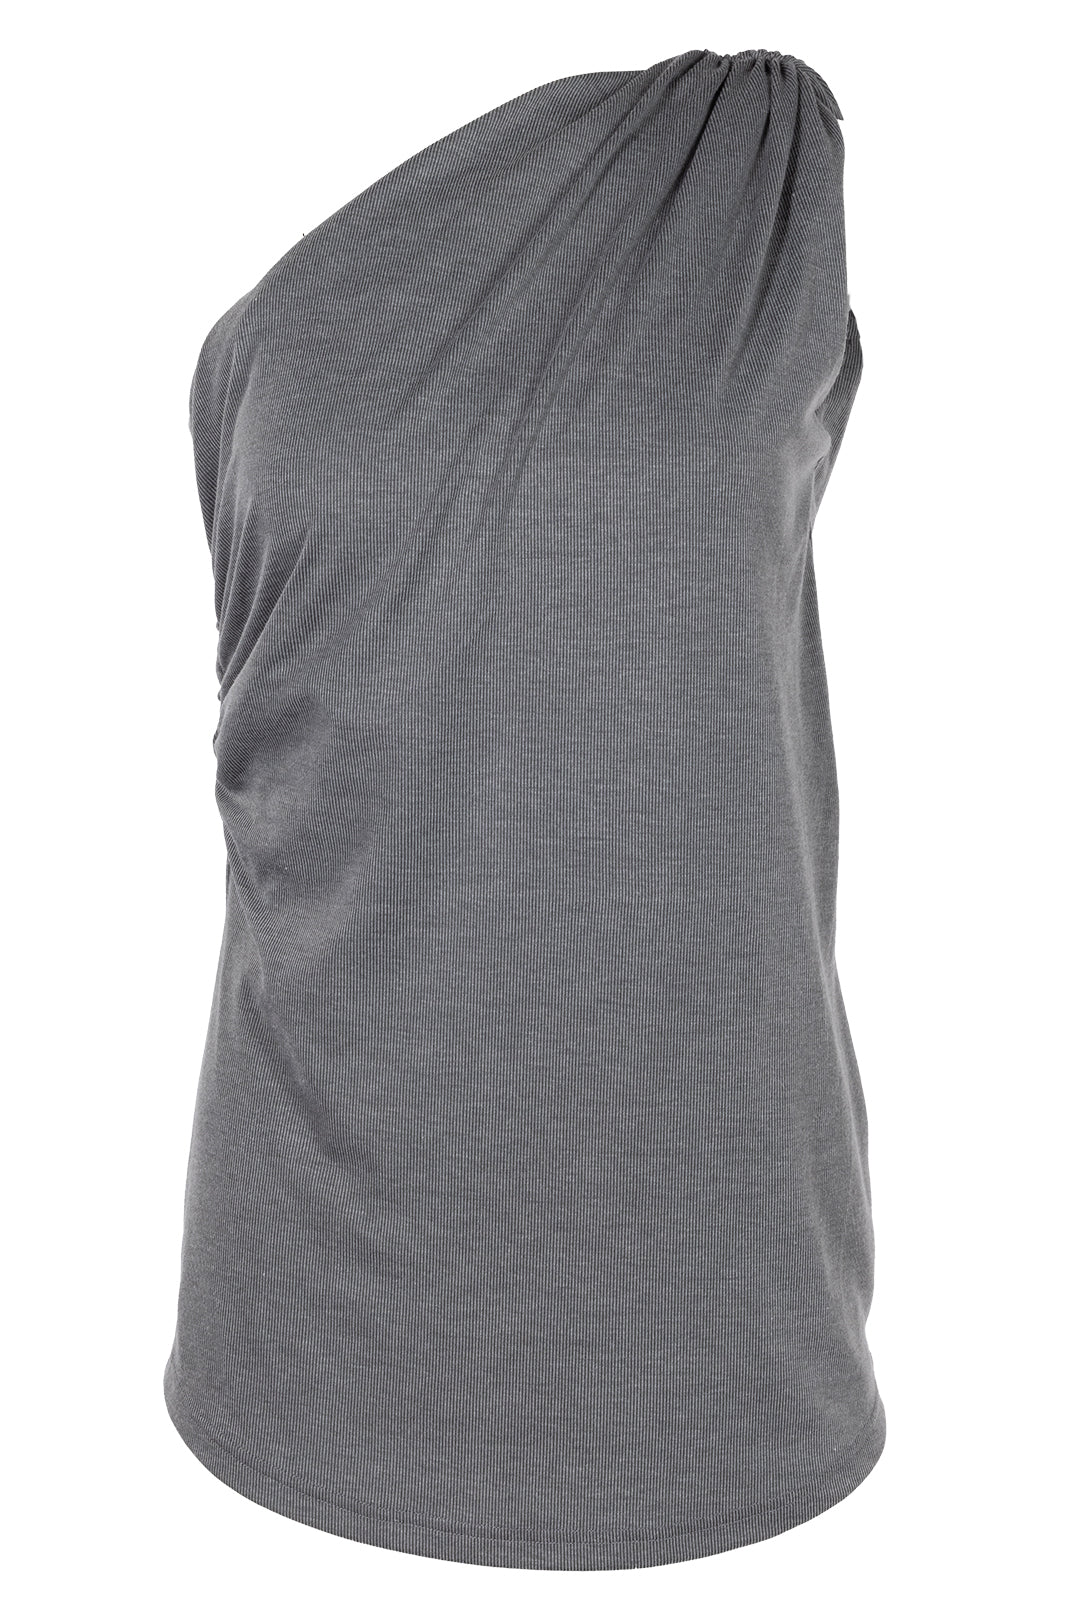 Camisole grise à épaule asymétrique | Milling JOELLE Collection